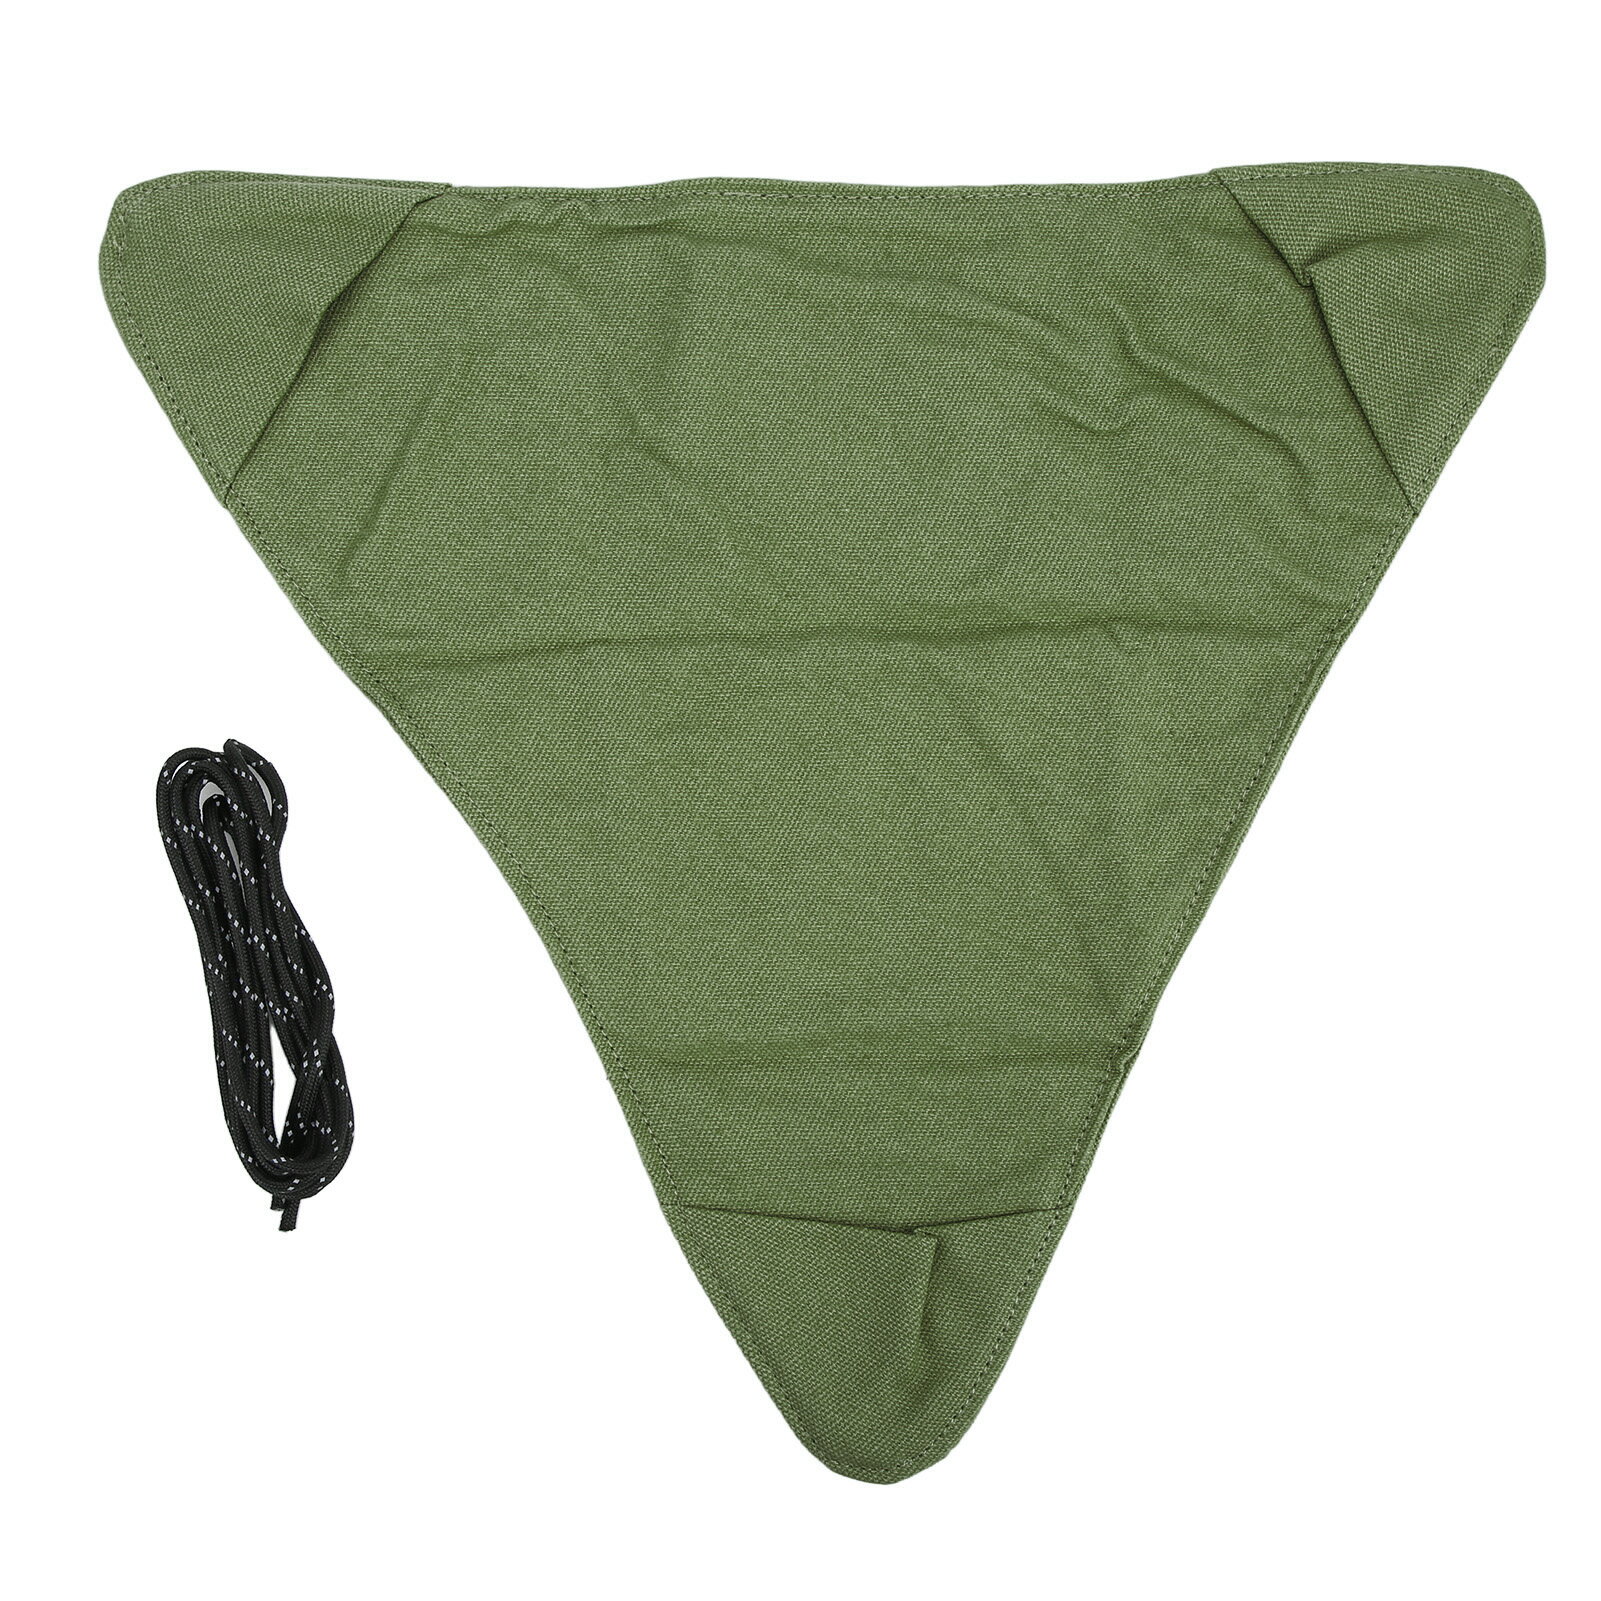 布製フィールドスツール 折りたたみ式布キャンプベンチキャンバス素材ポータブル柔らかな質感軽量屋外ピクニック用横長36.5cm